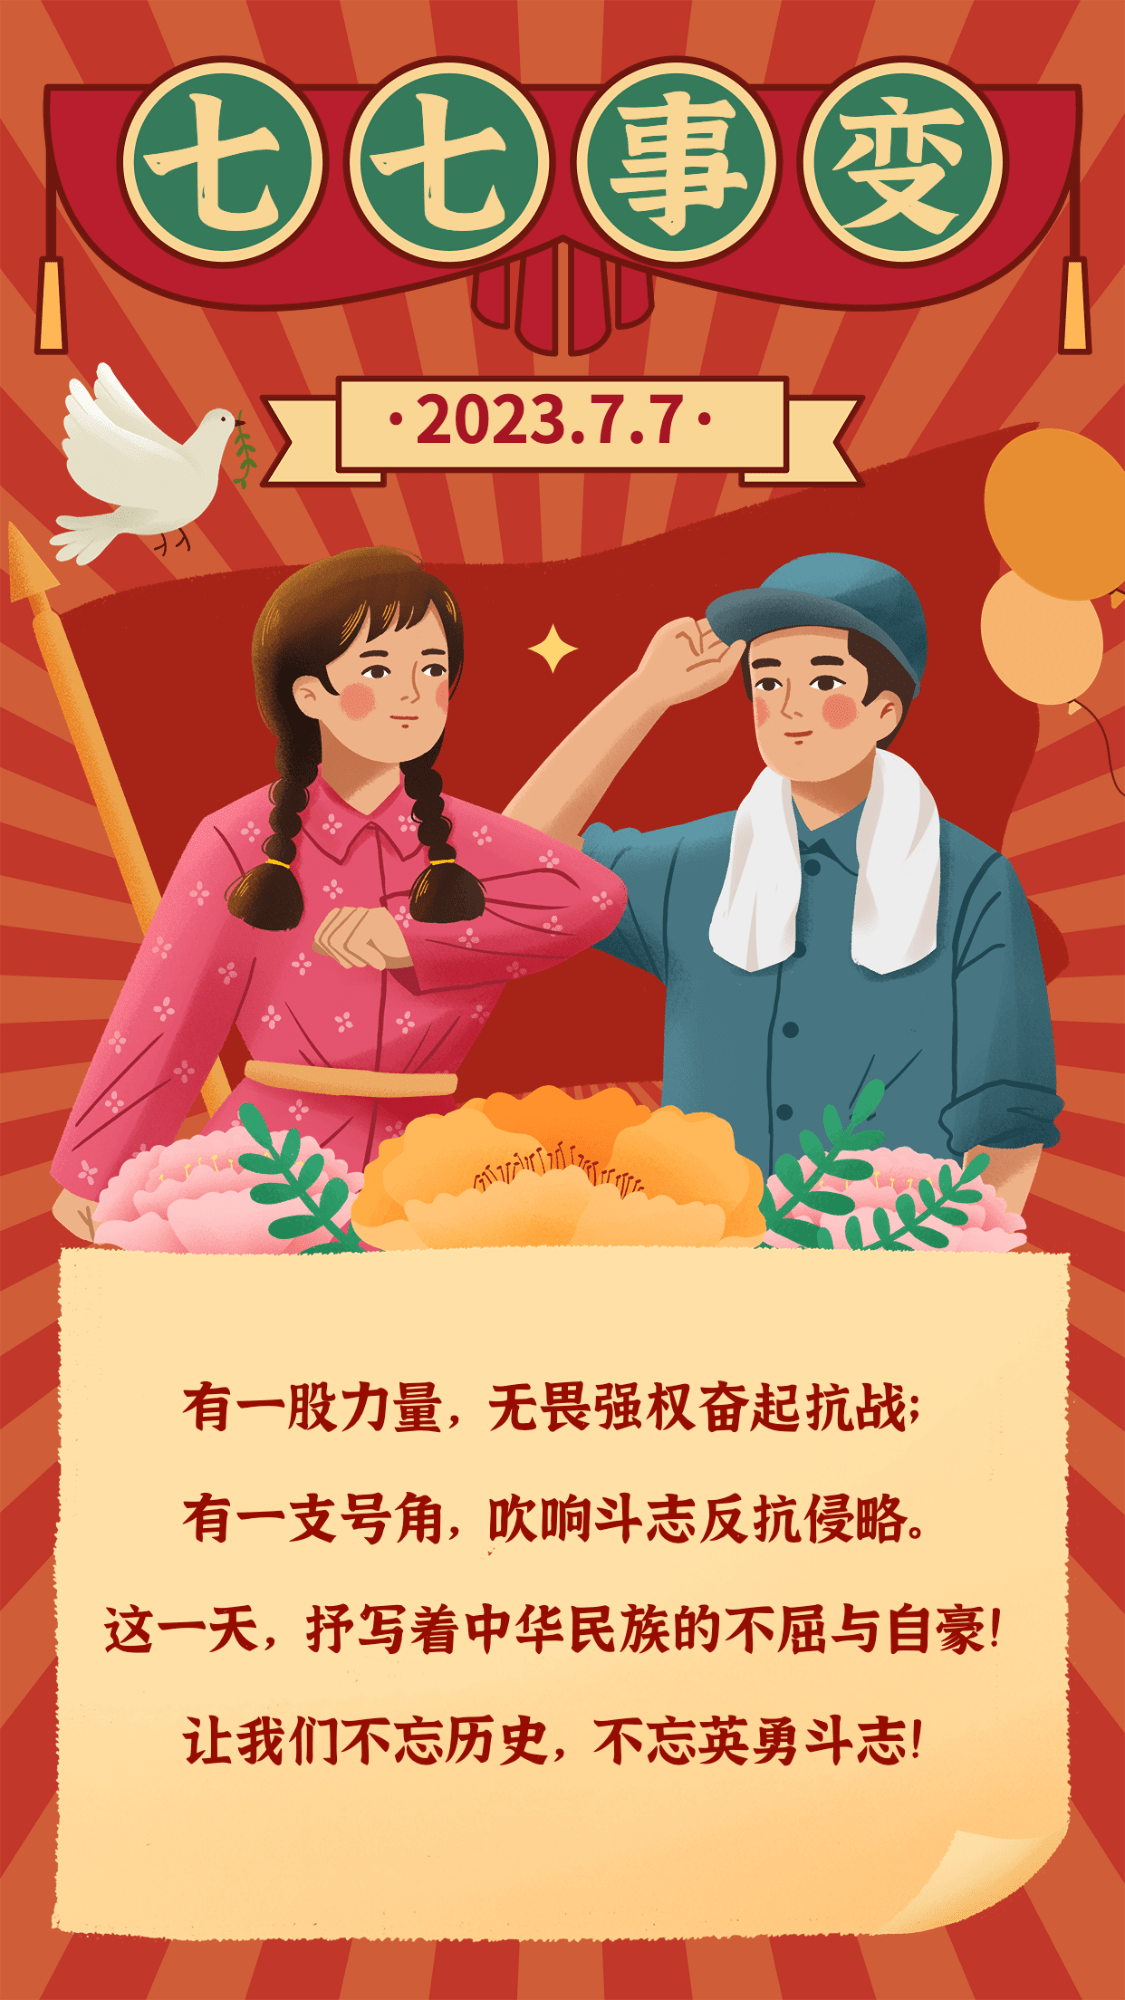 七七事变周年纪念宣传插画手机海报预览效果